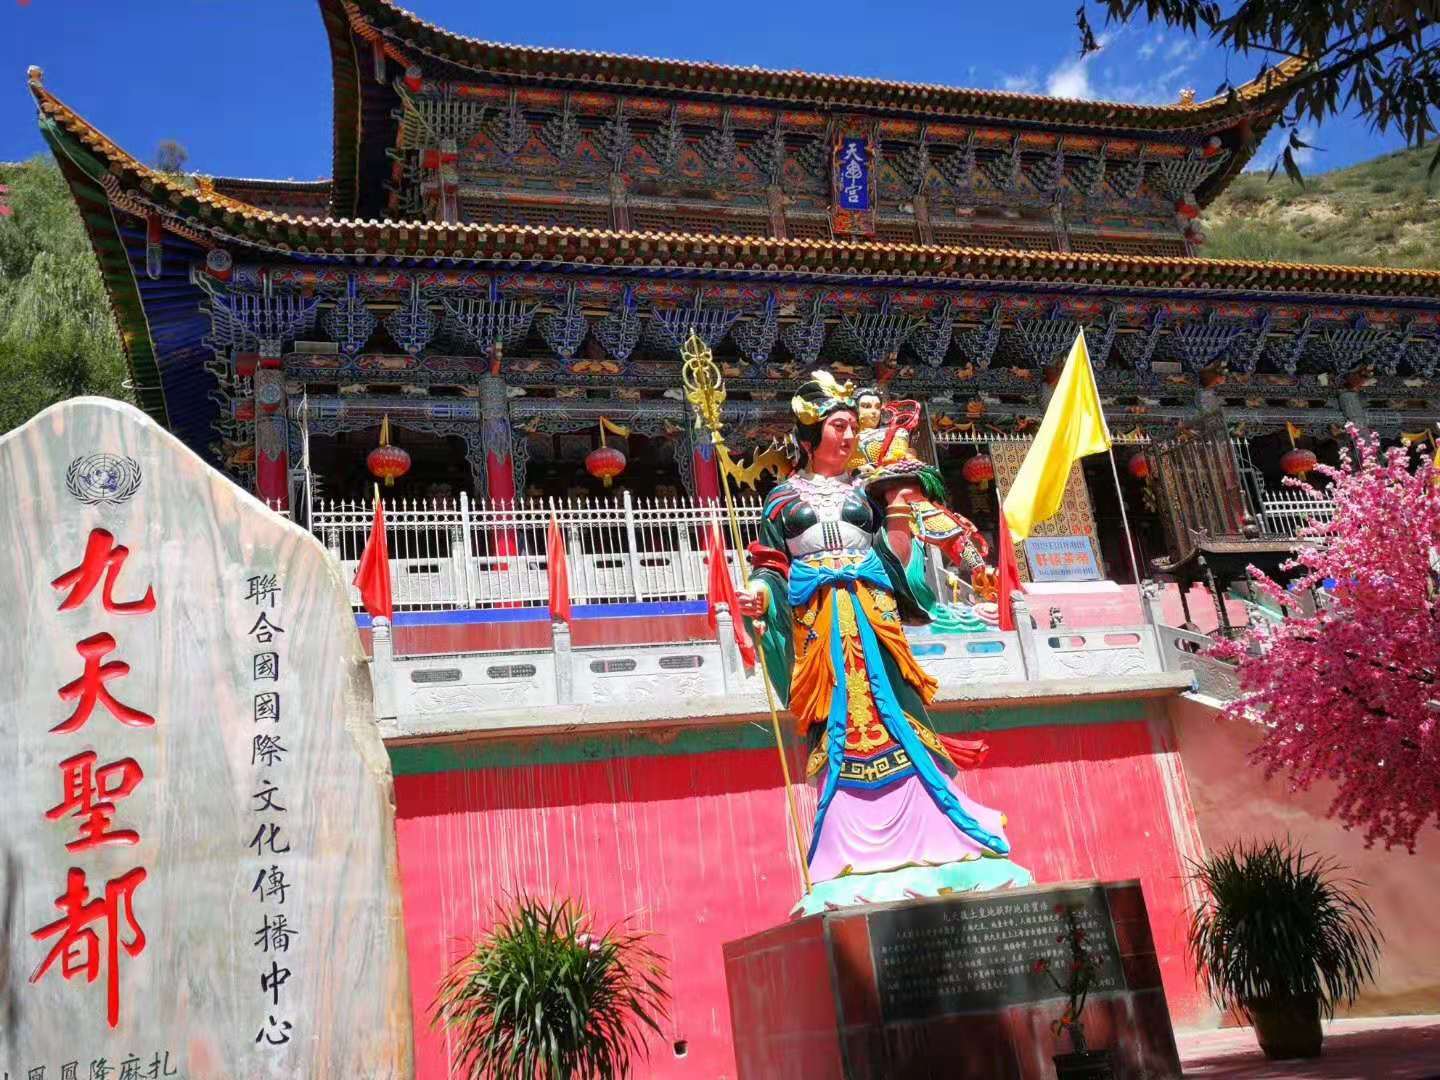 【携程攻略】西宁塔尔寺景点,塔尔寺美得惊人 ，藏传佛教卍的建筑色彩与构图，第二张屋顶上是…